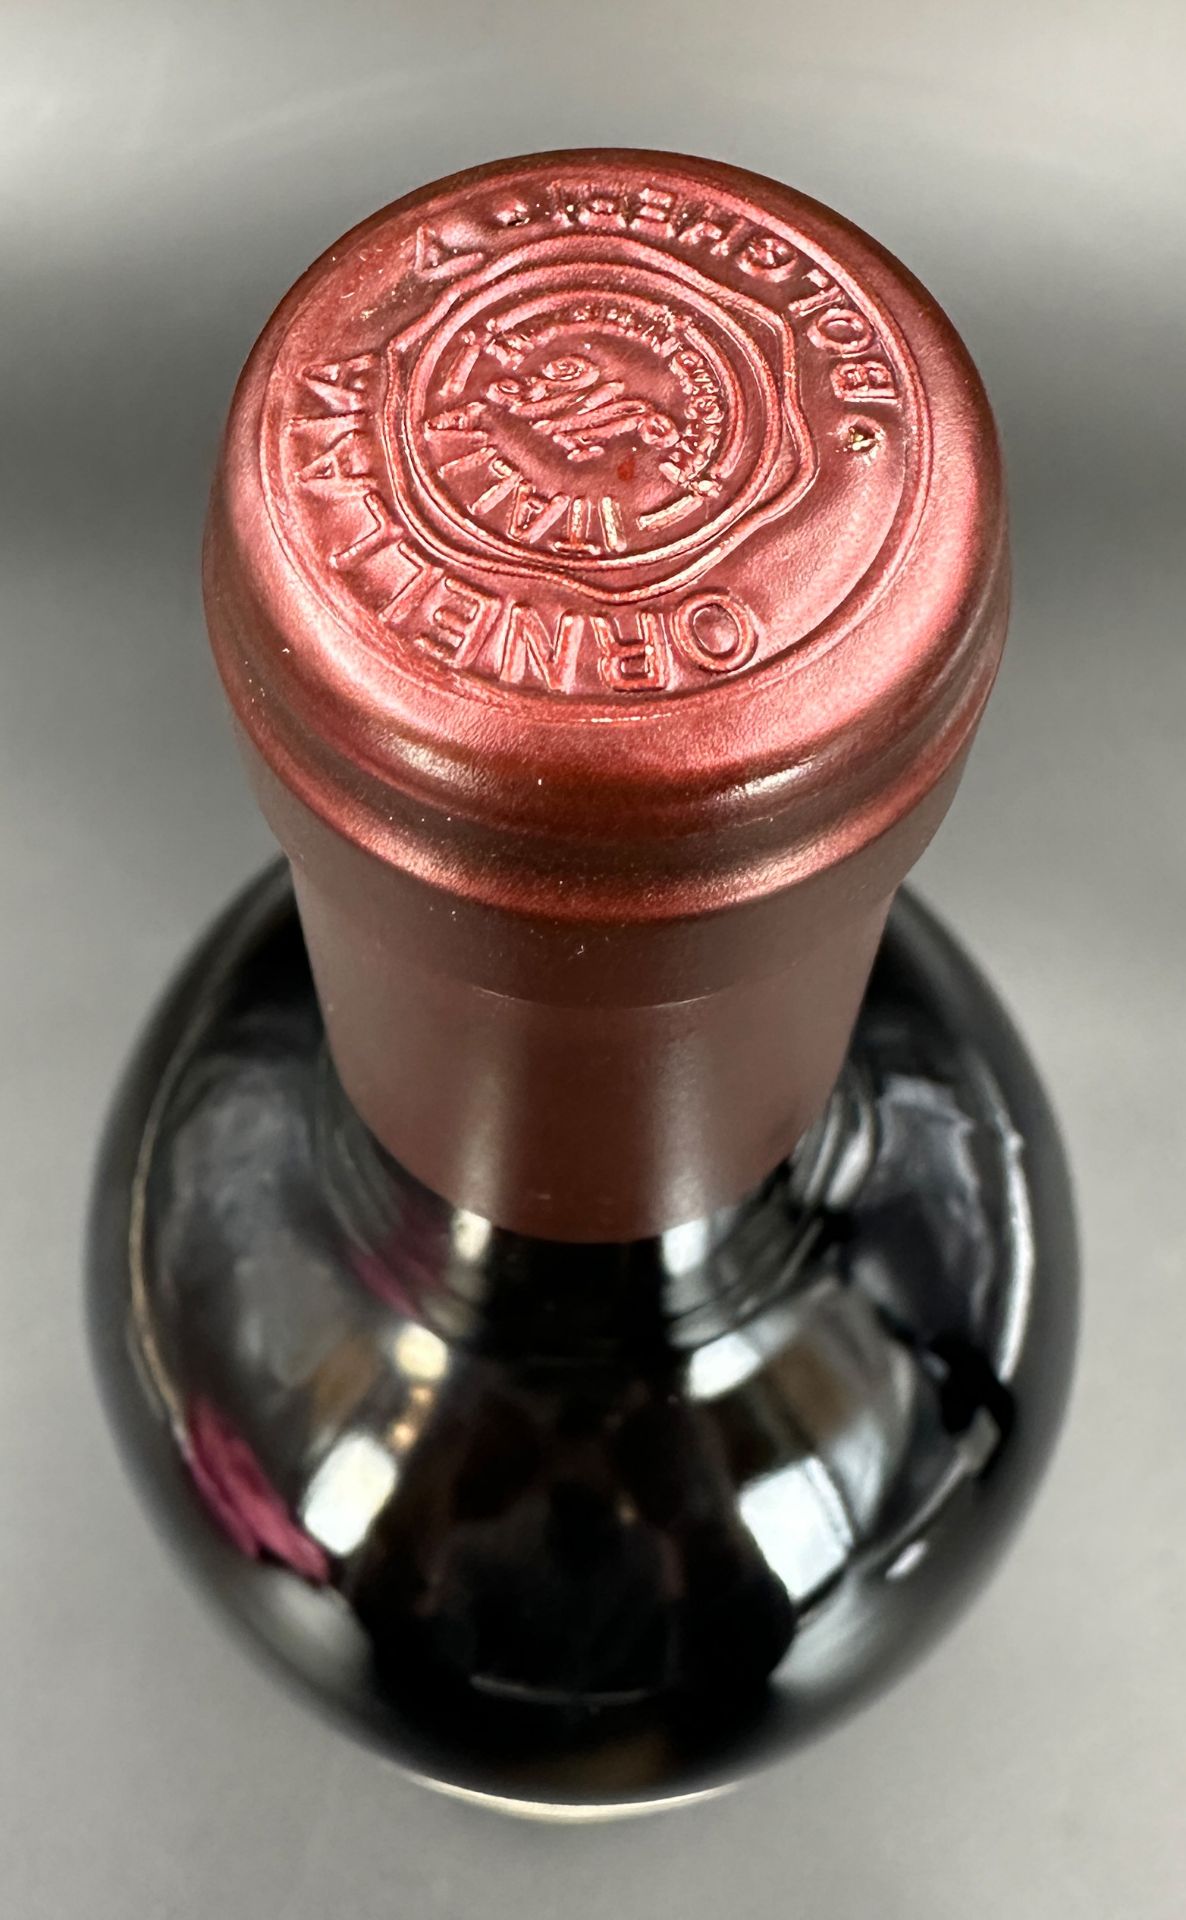 ORNELLAIA. 1 Flasche Rotwein. 2004. - Bild 5 aus 8